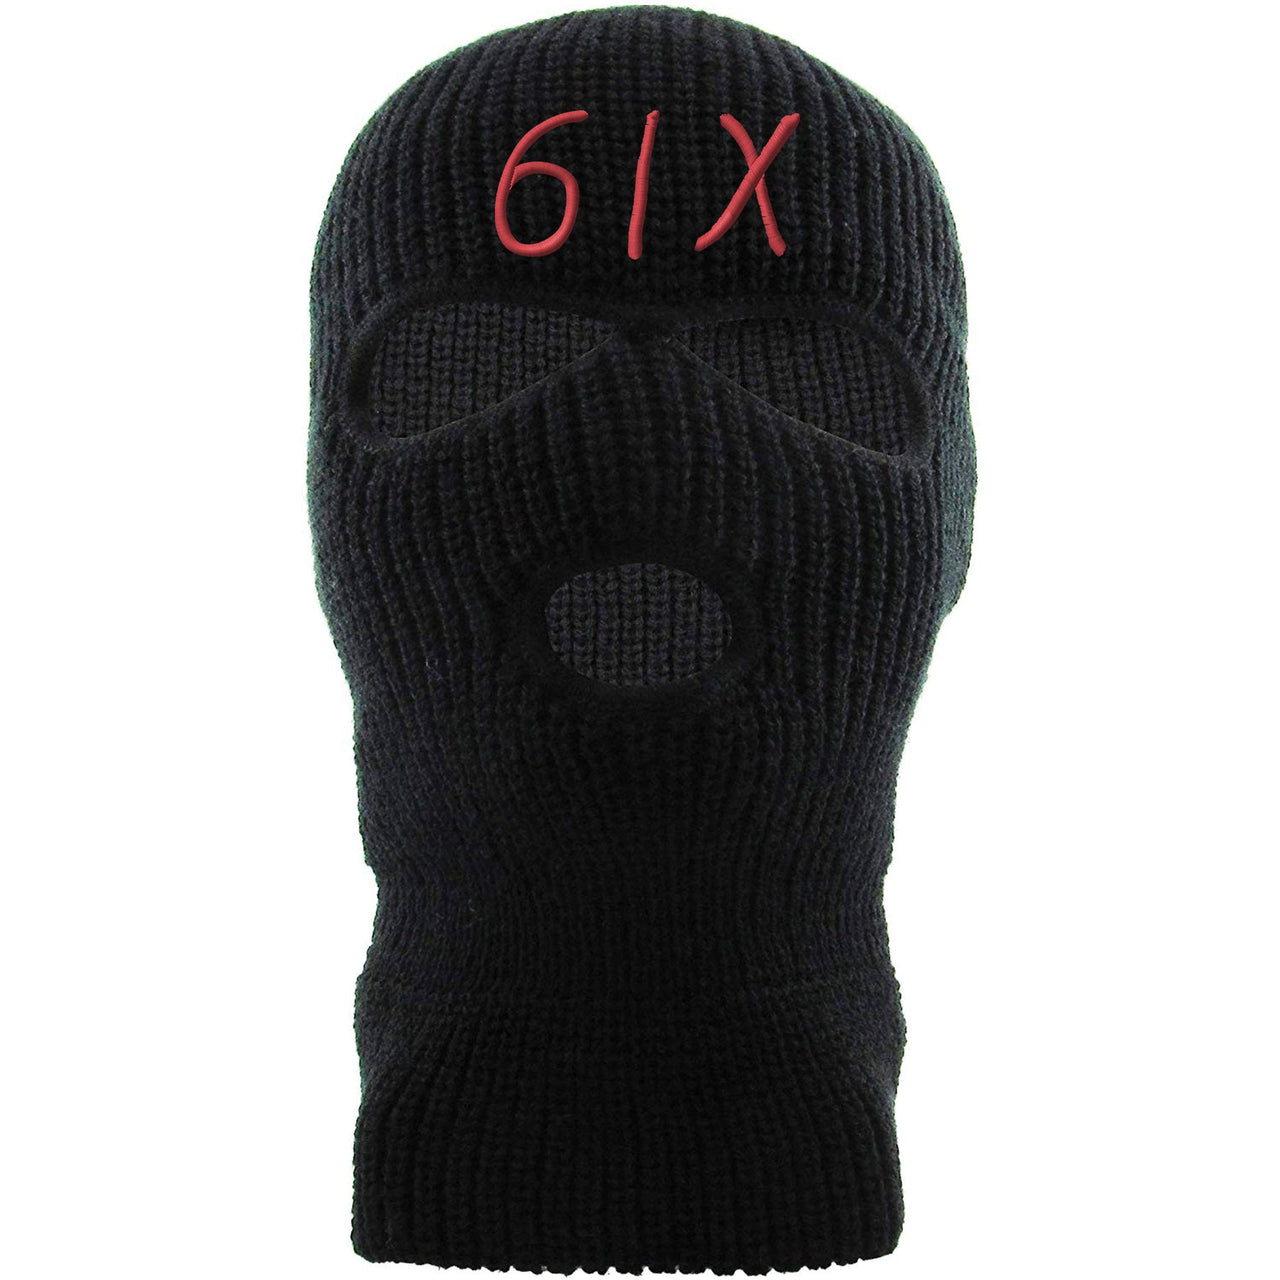 Infrared 6s Ski Mask | 6ix, Black